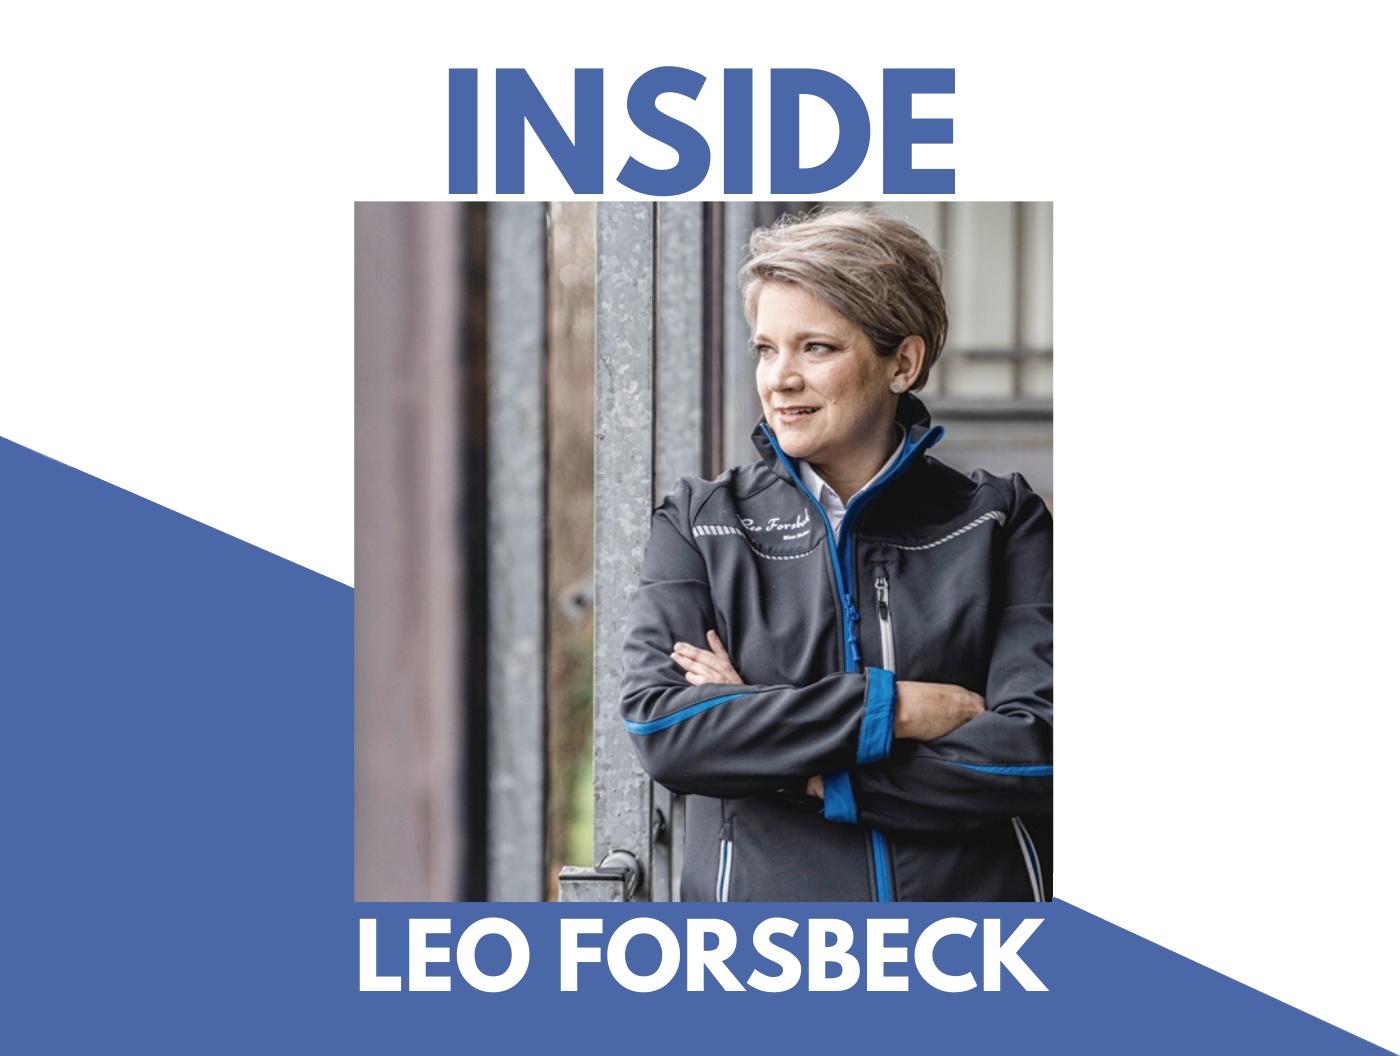 Leo Forsbeck Versicherungsmakler| Wir sind anders!